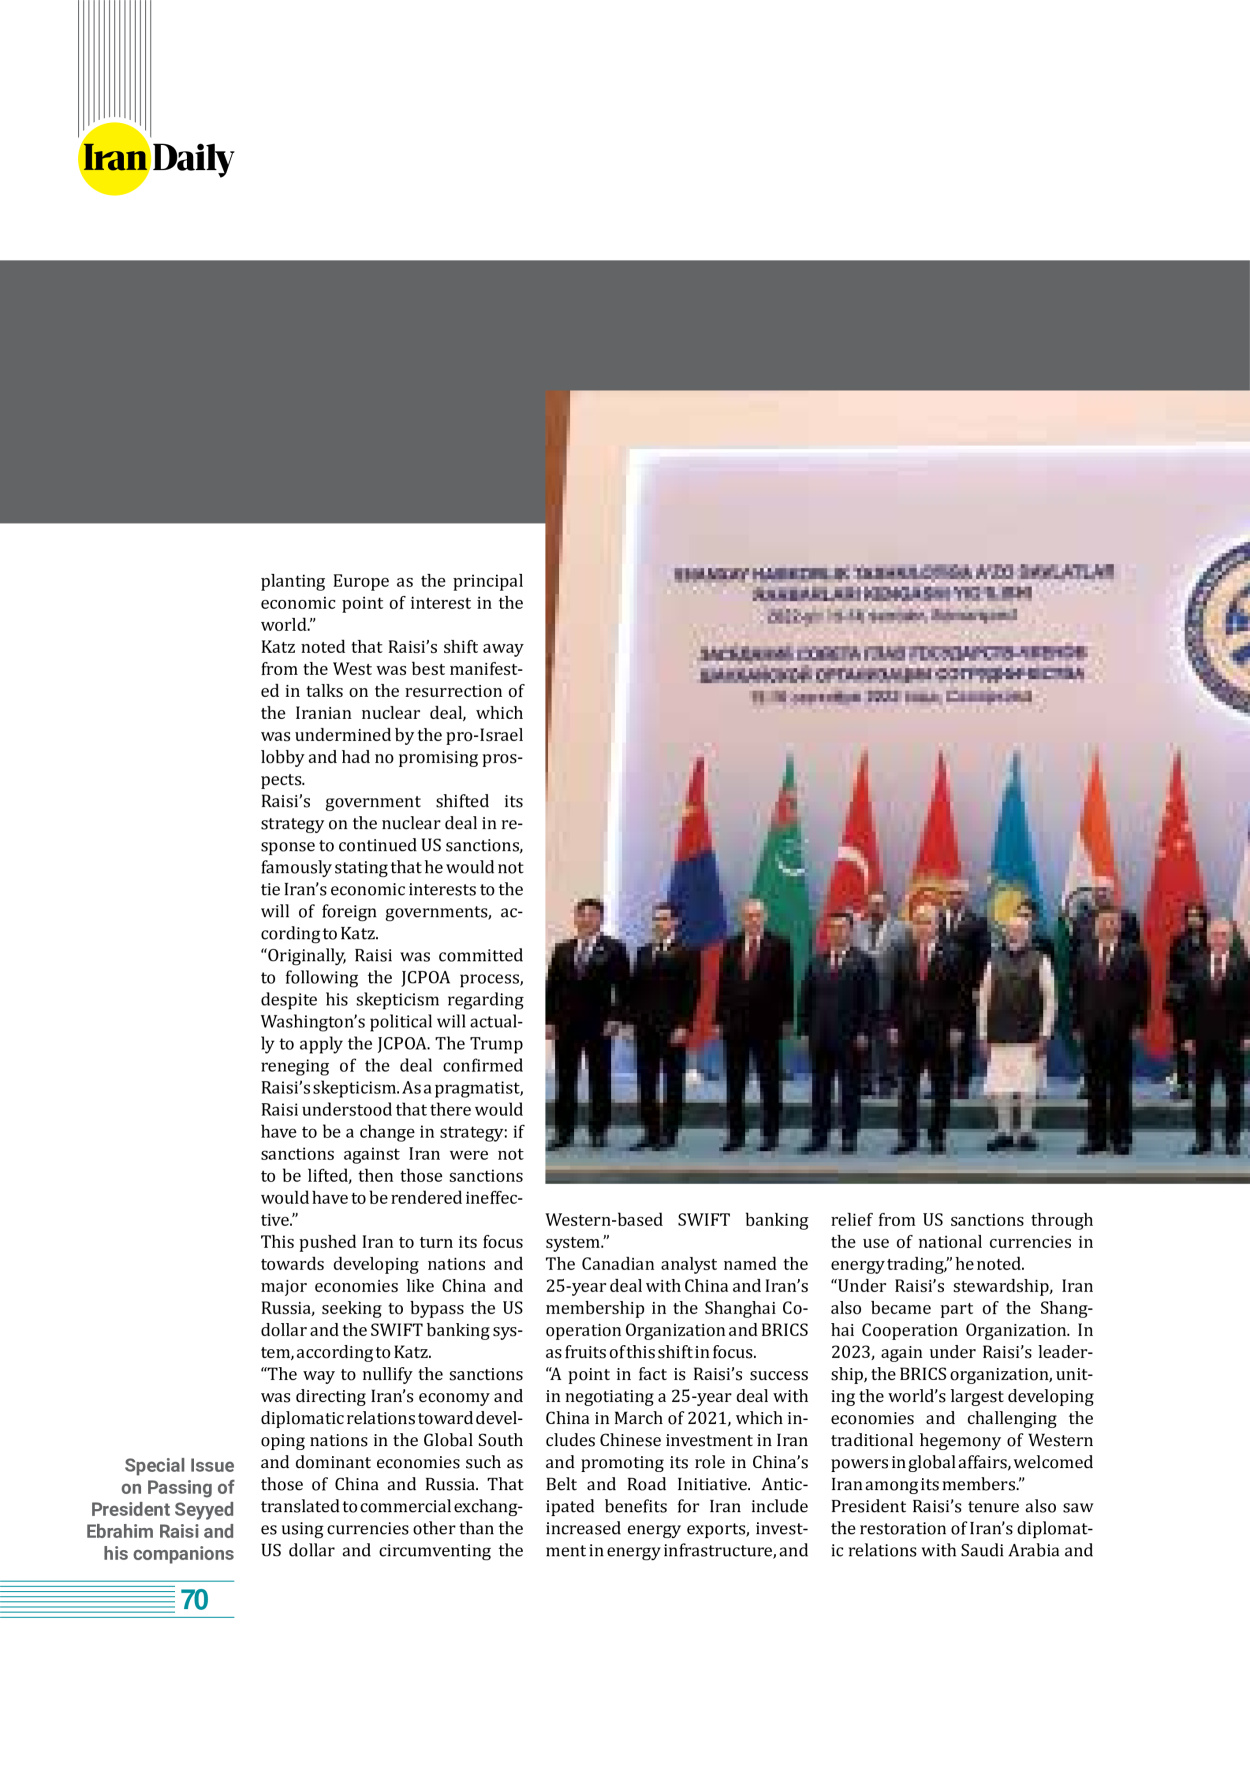 روزنامه ایران - ویژه نامه وِزه نامه چهلم شهید رییسی( انگلیسی) - ۱۷ تیر ۱۴۰۳ - صفحه ۷۰